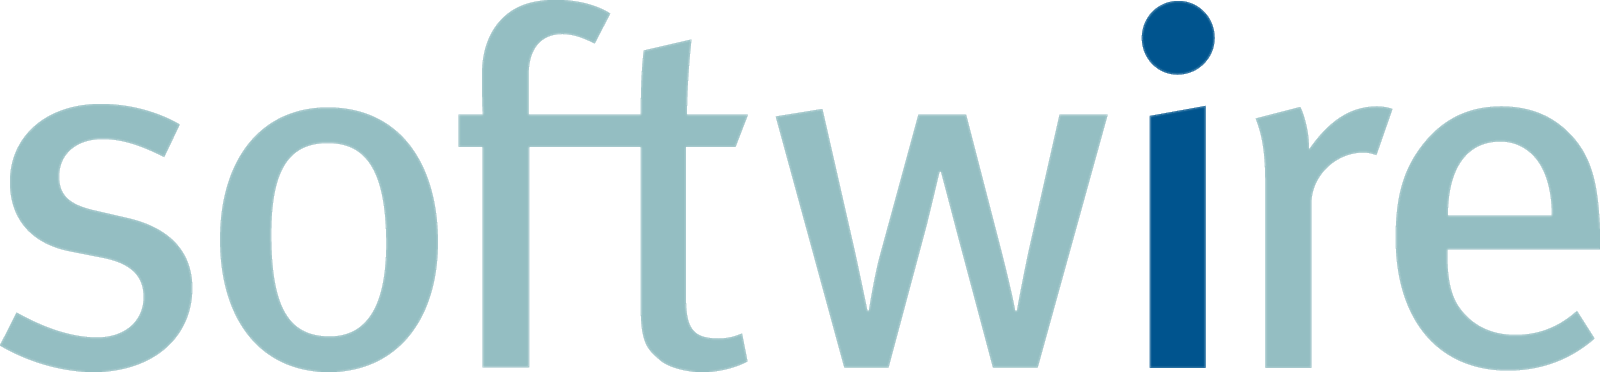 Softwire logo